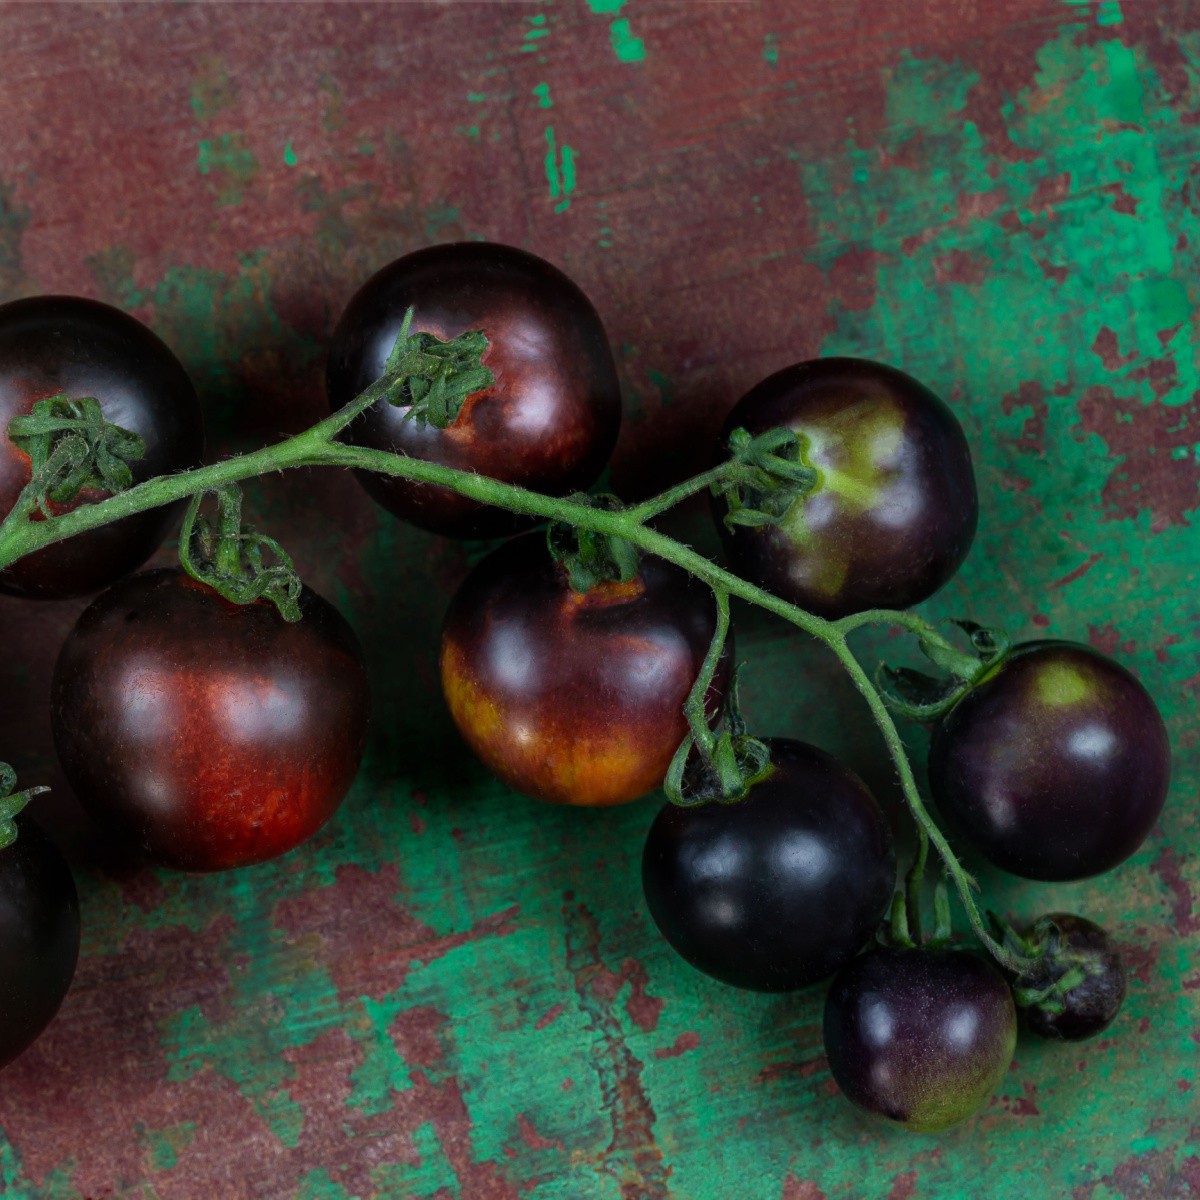 Rajče tyčkové černé Blackball - Solanum lycopersicum - osivo rajčat - 20 ks